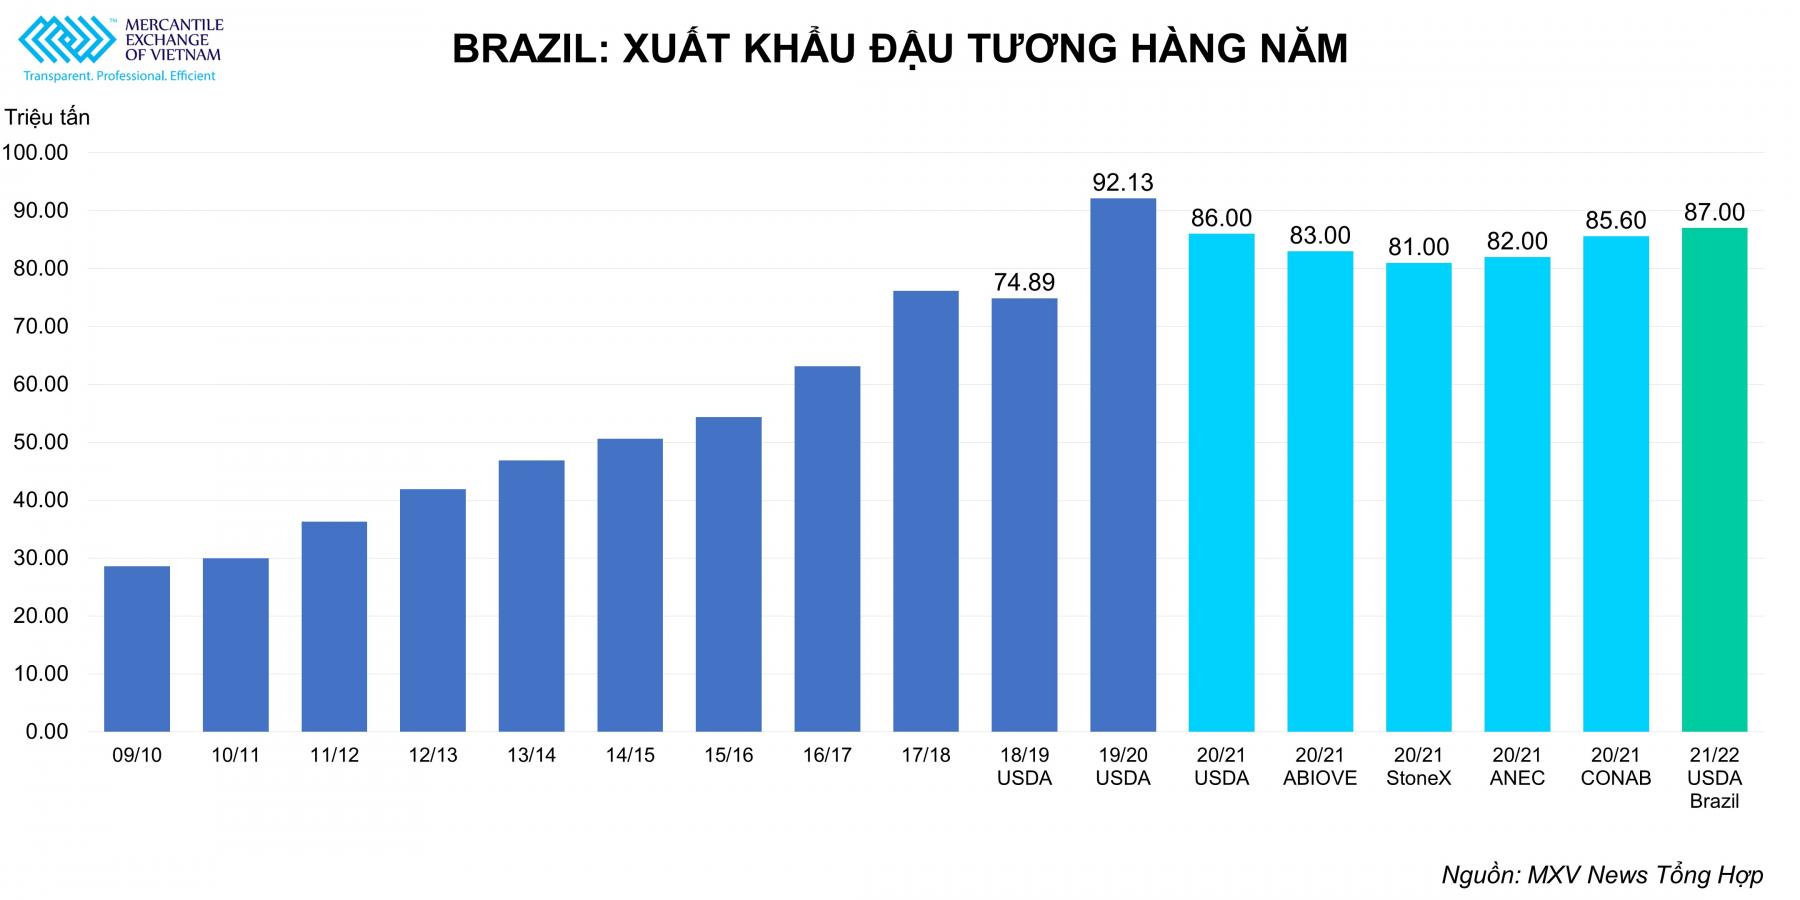 Xuất khẩu đậu tương hàng năm của Brazil